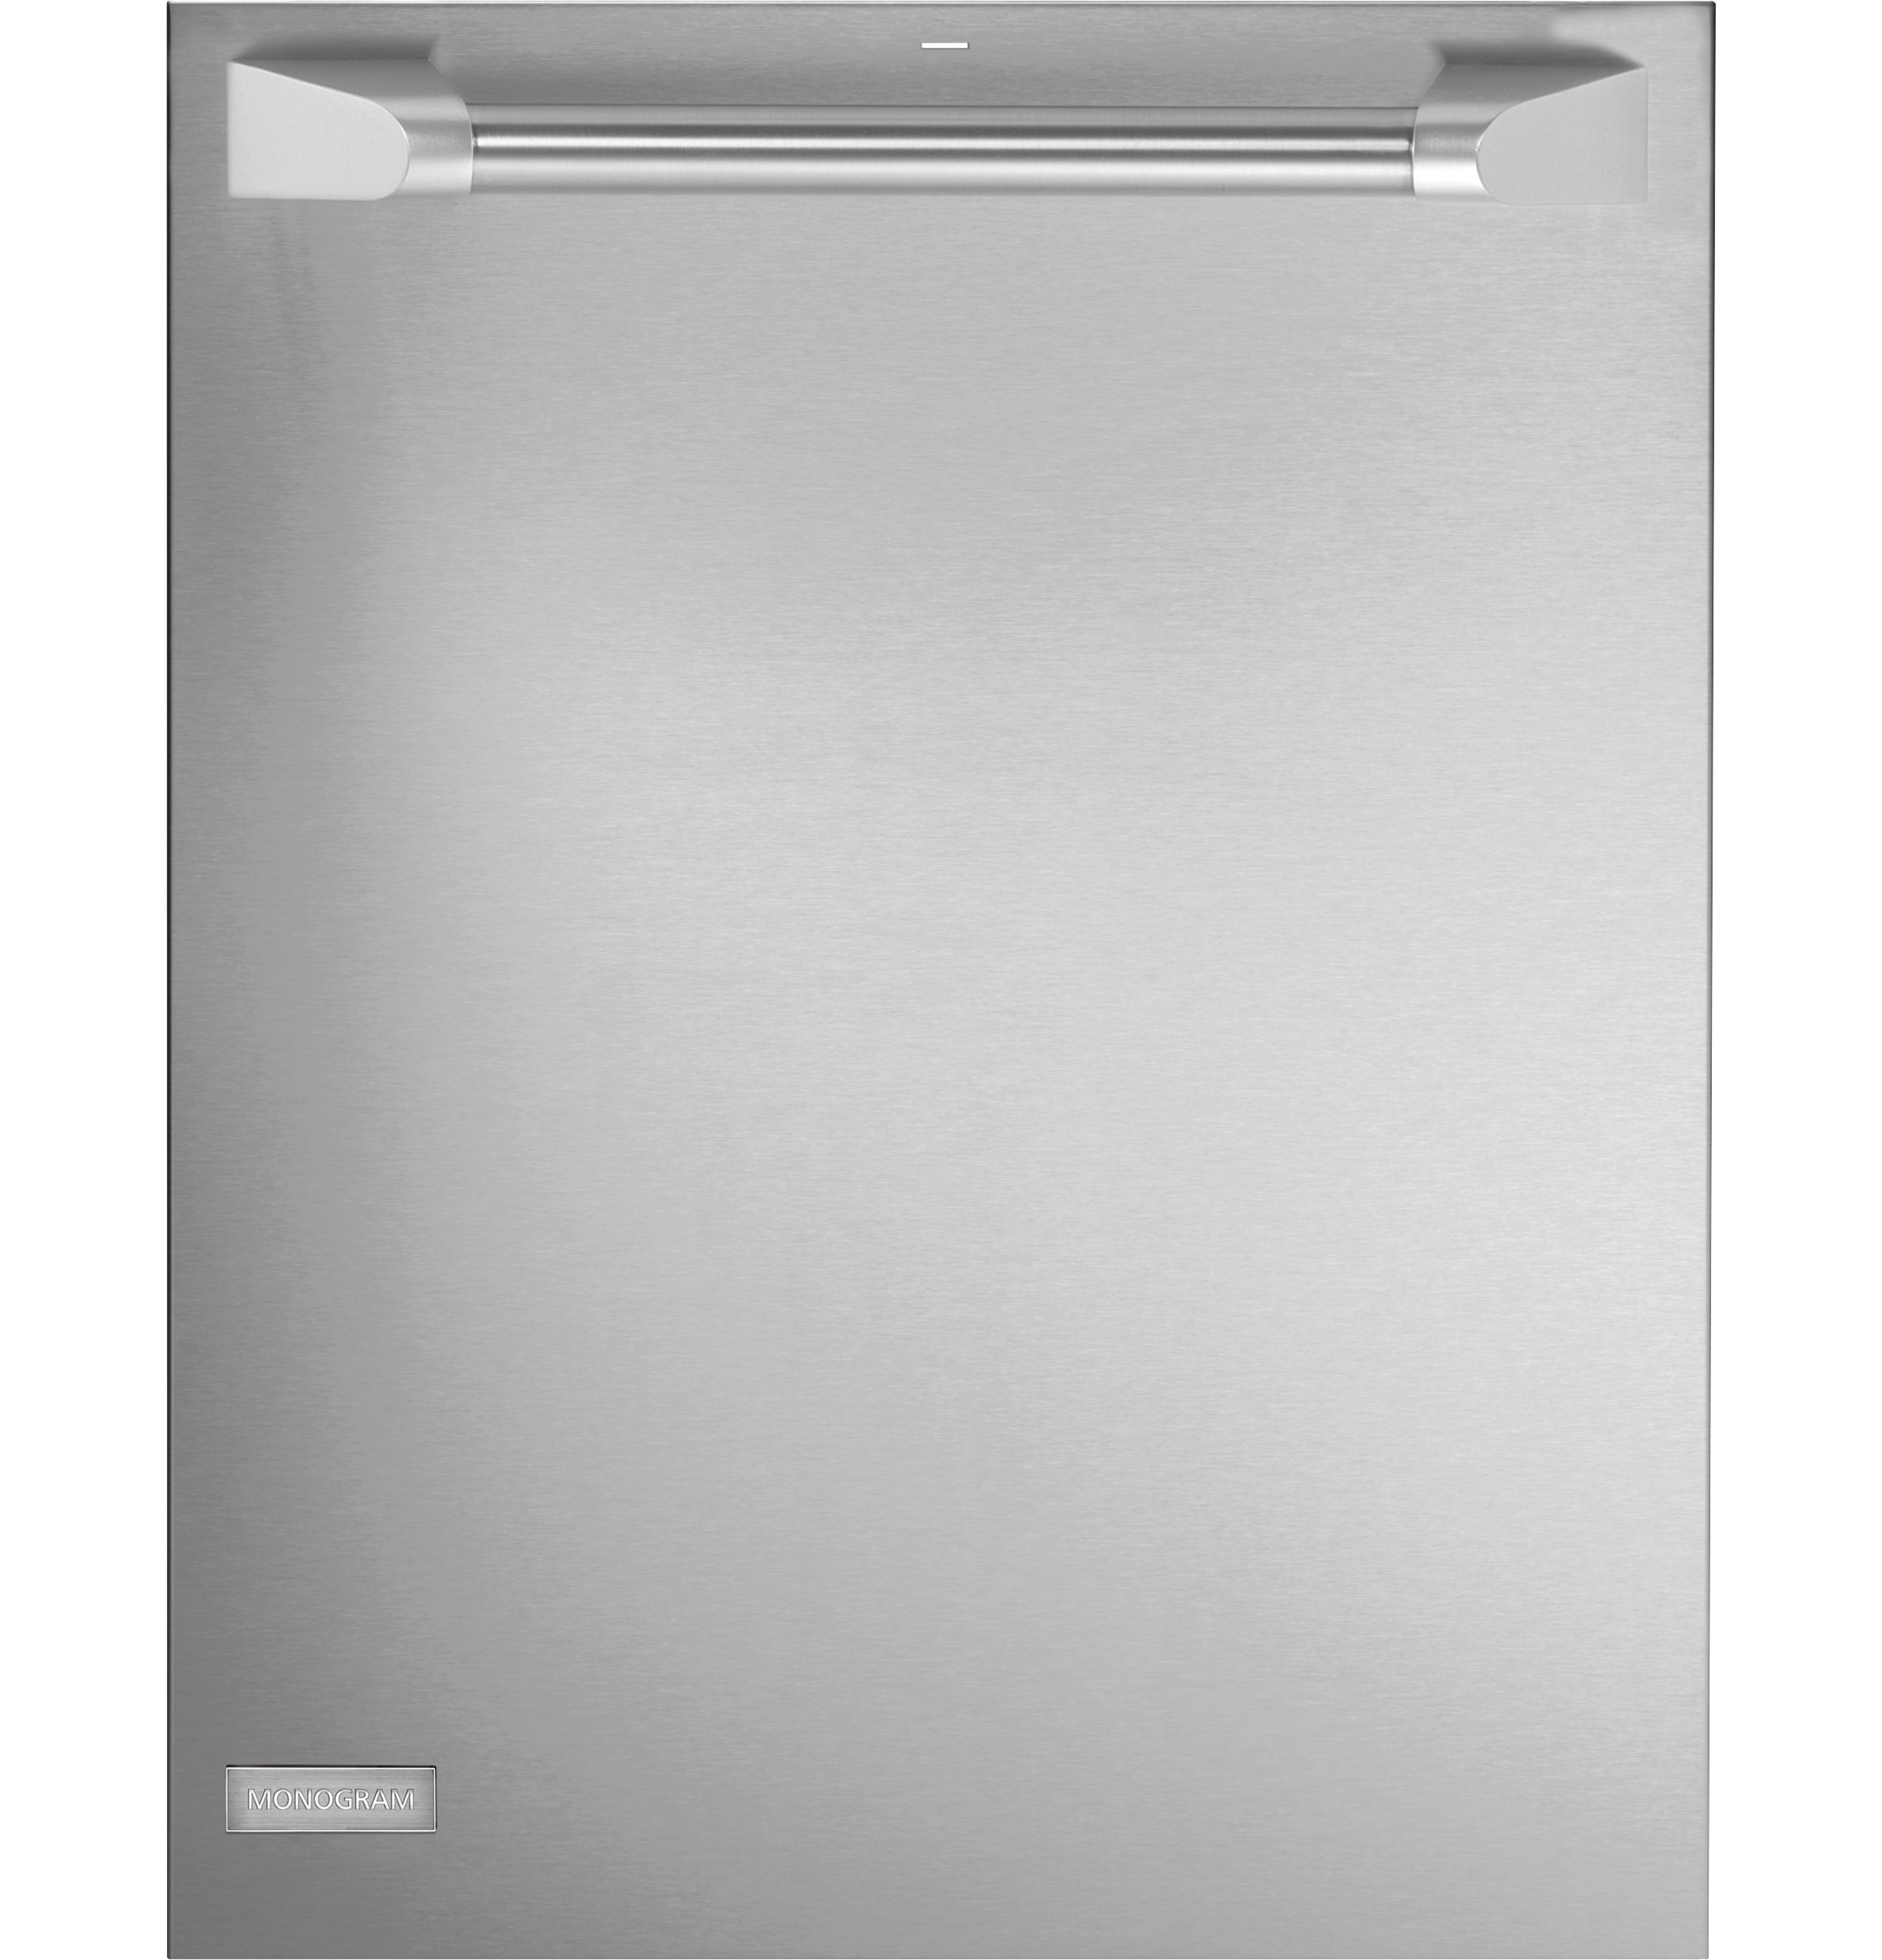 Monogram® Fully Integrated Dishwasher